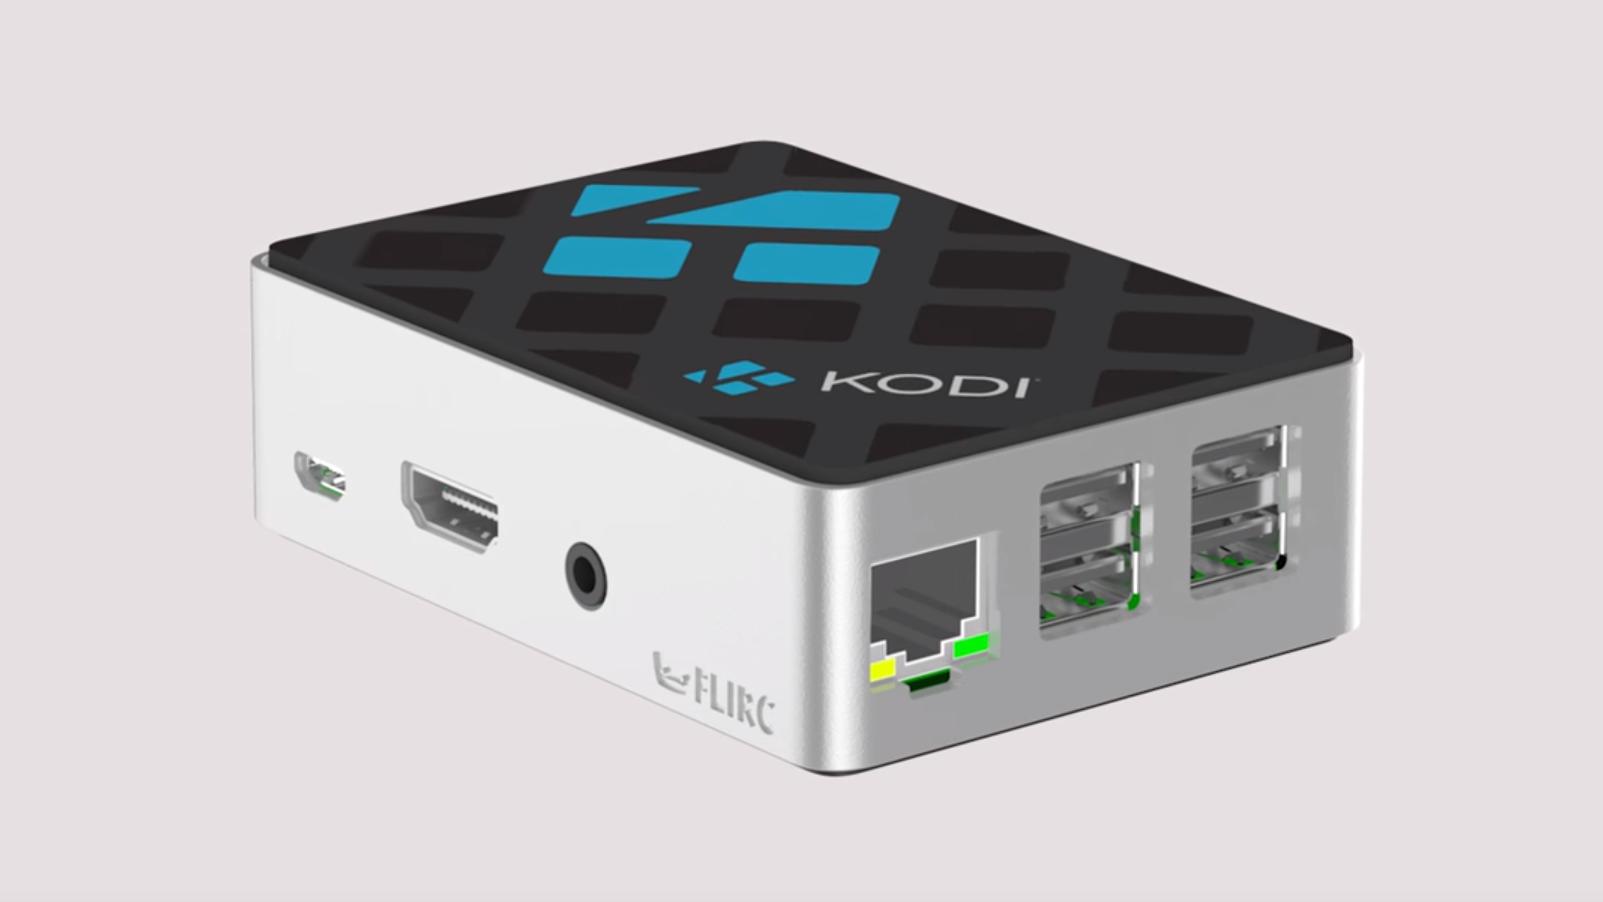 Selskapet bak medieappen Kodi har laget lekkert kabinett til Raspberry Pi